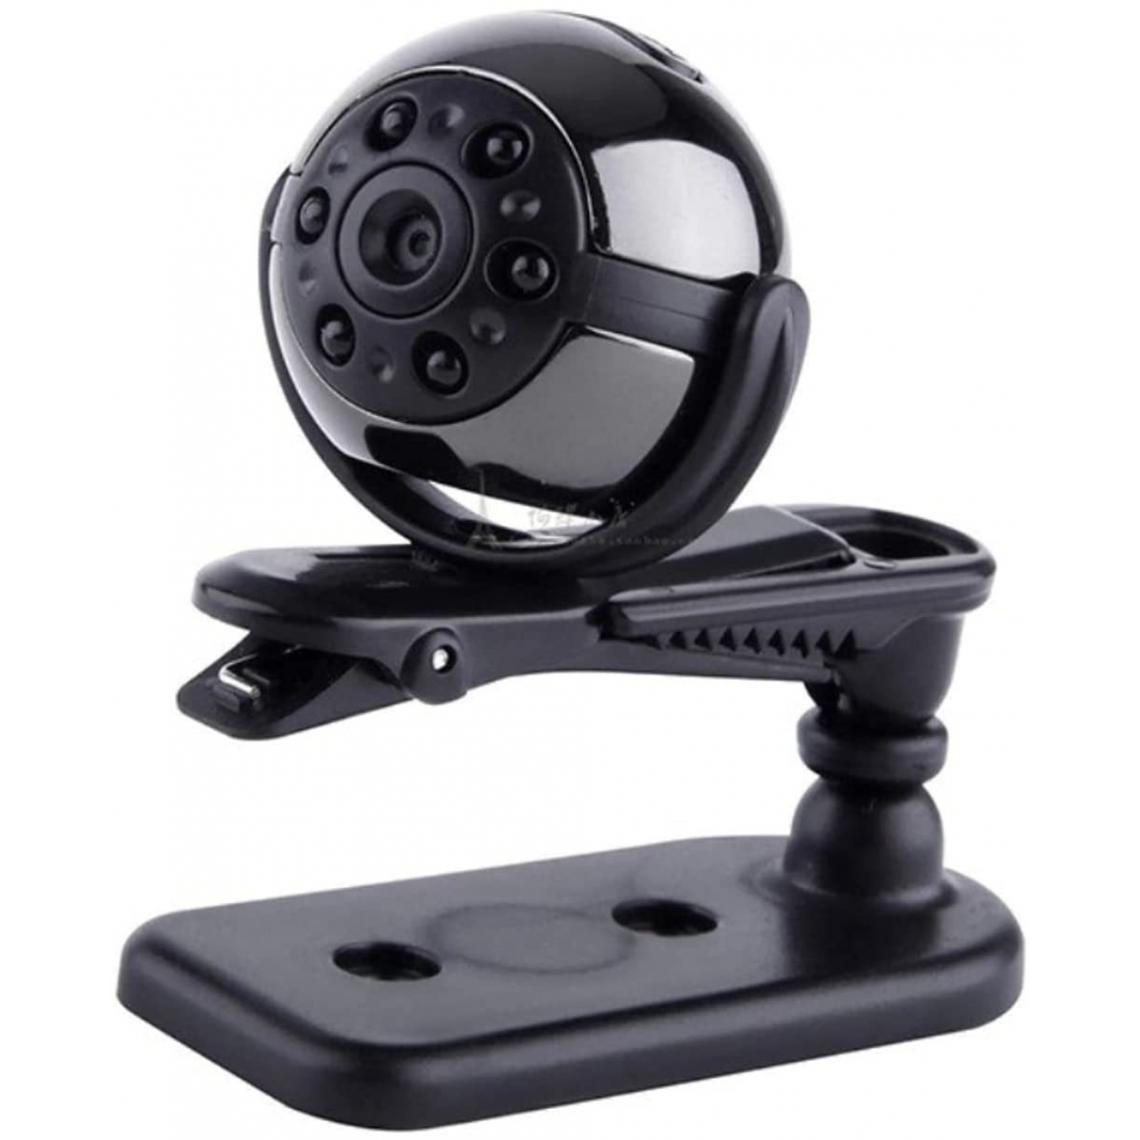 Chrono - Caméra de sport HD 1080p, mini caméra espion, prise de vue grand angle 150, 12 millions de pixels, vision nocturne infrarouge, caméra d'action(Noir) - Autres accessoires smartphone